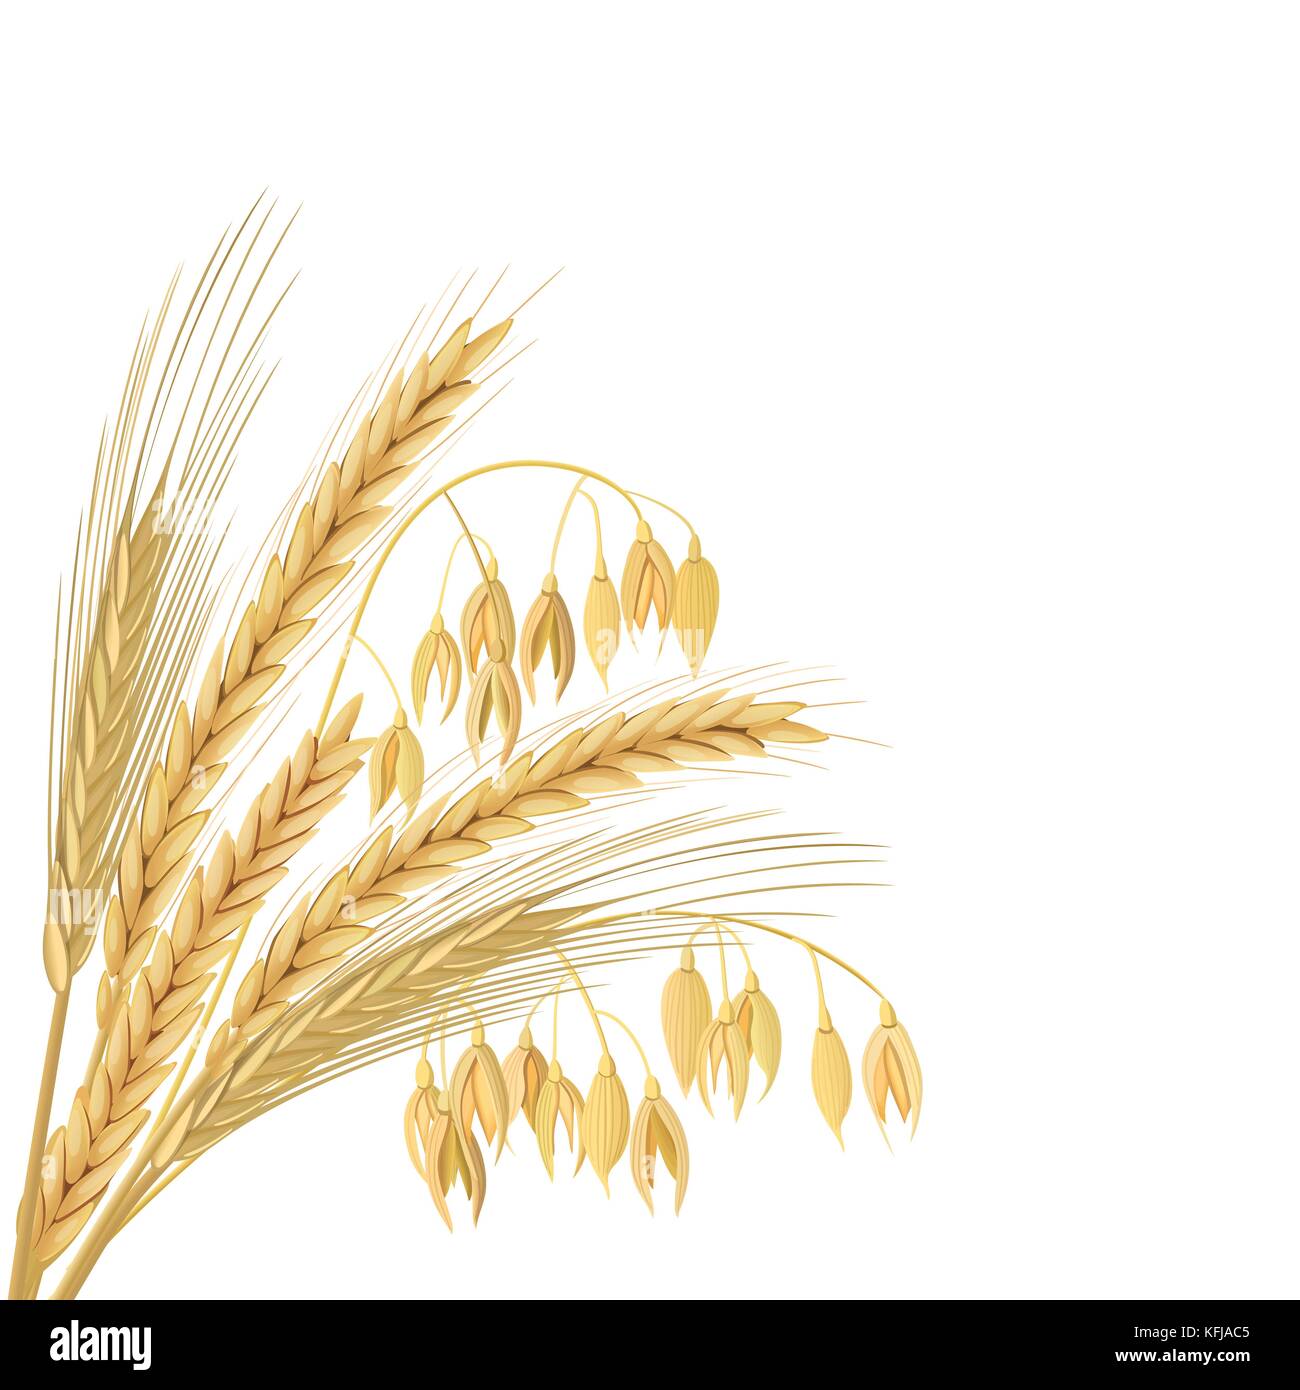 Vier Getreide Körner mit Ohren, Garbe. Weizen, Gerste, Hafer und Roggen. Stock Vektor